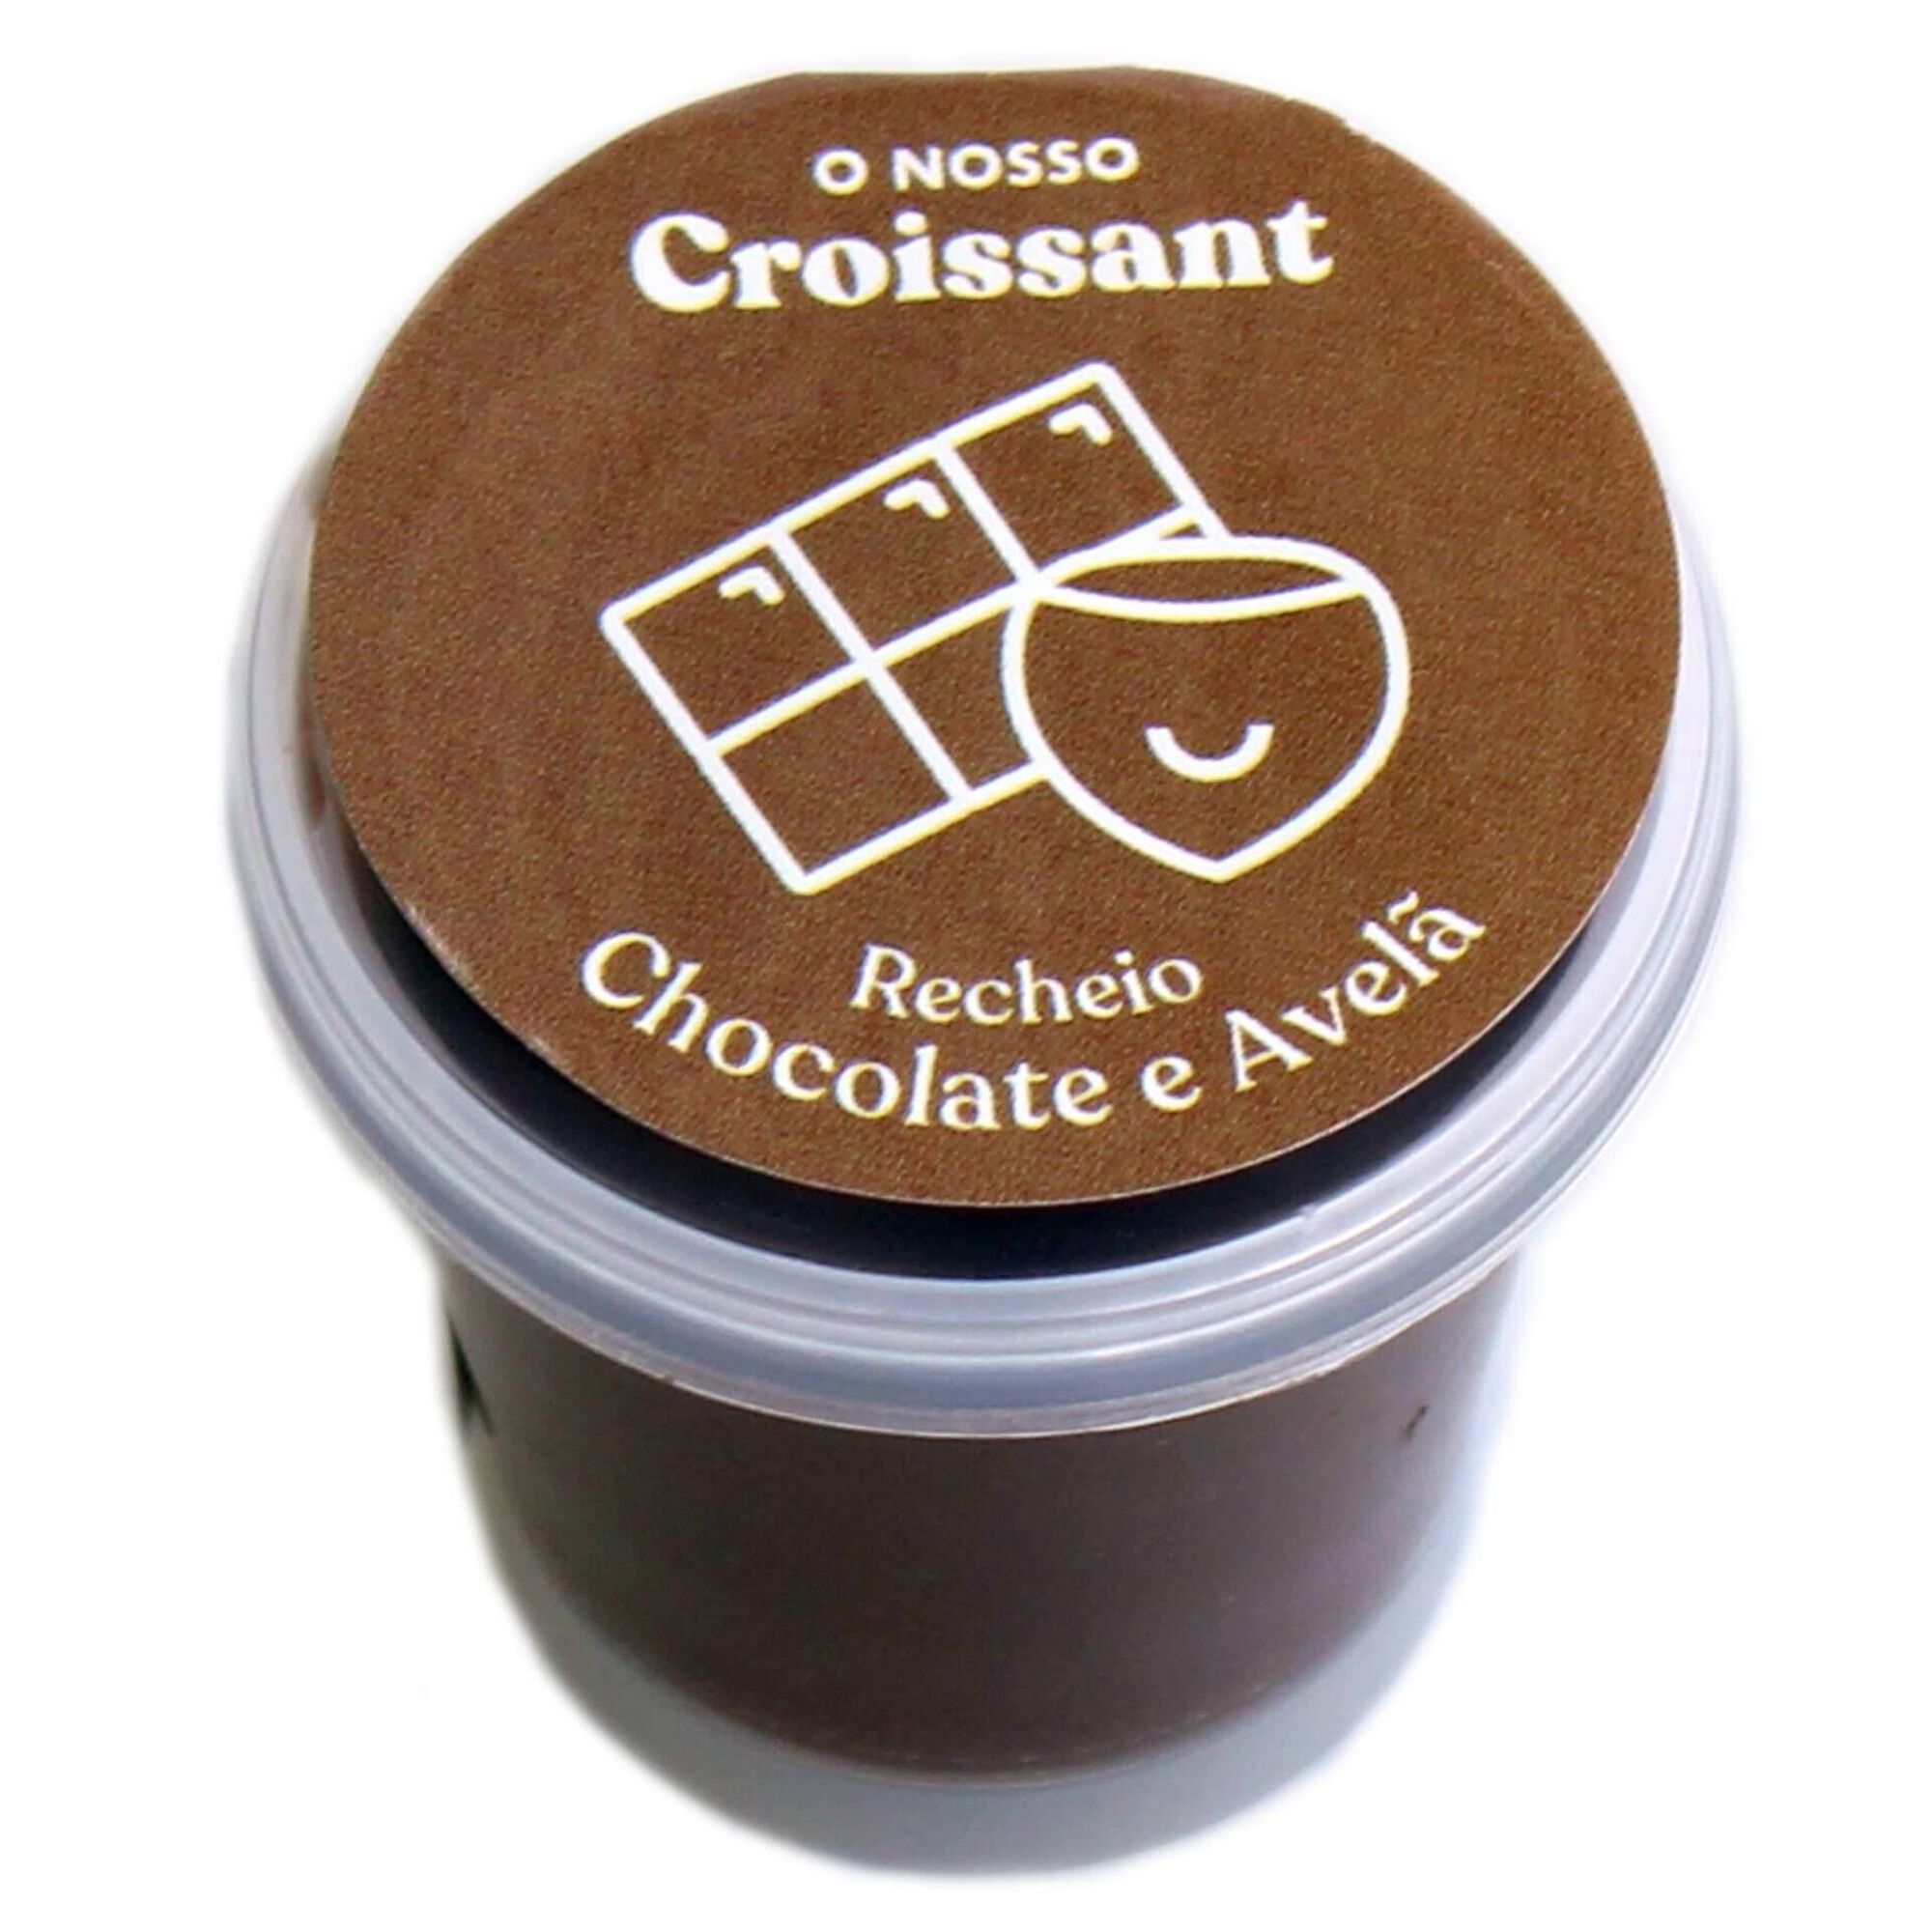 Recheio Chocolate "O Nosso Croissant"